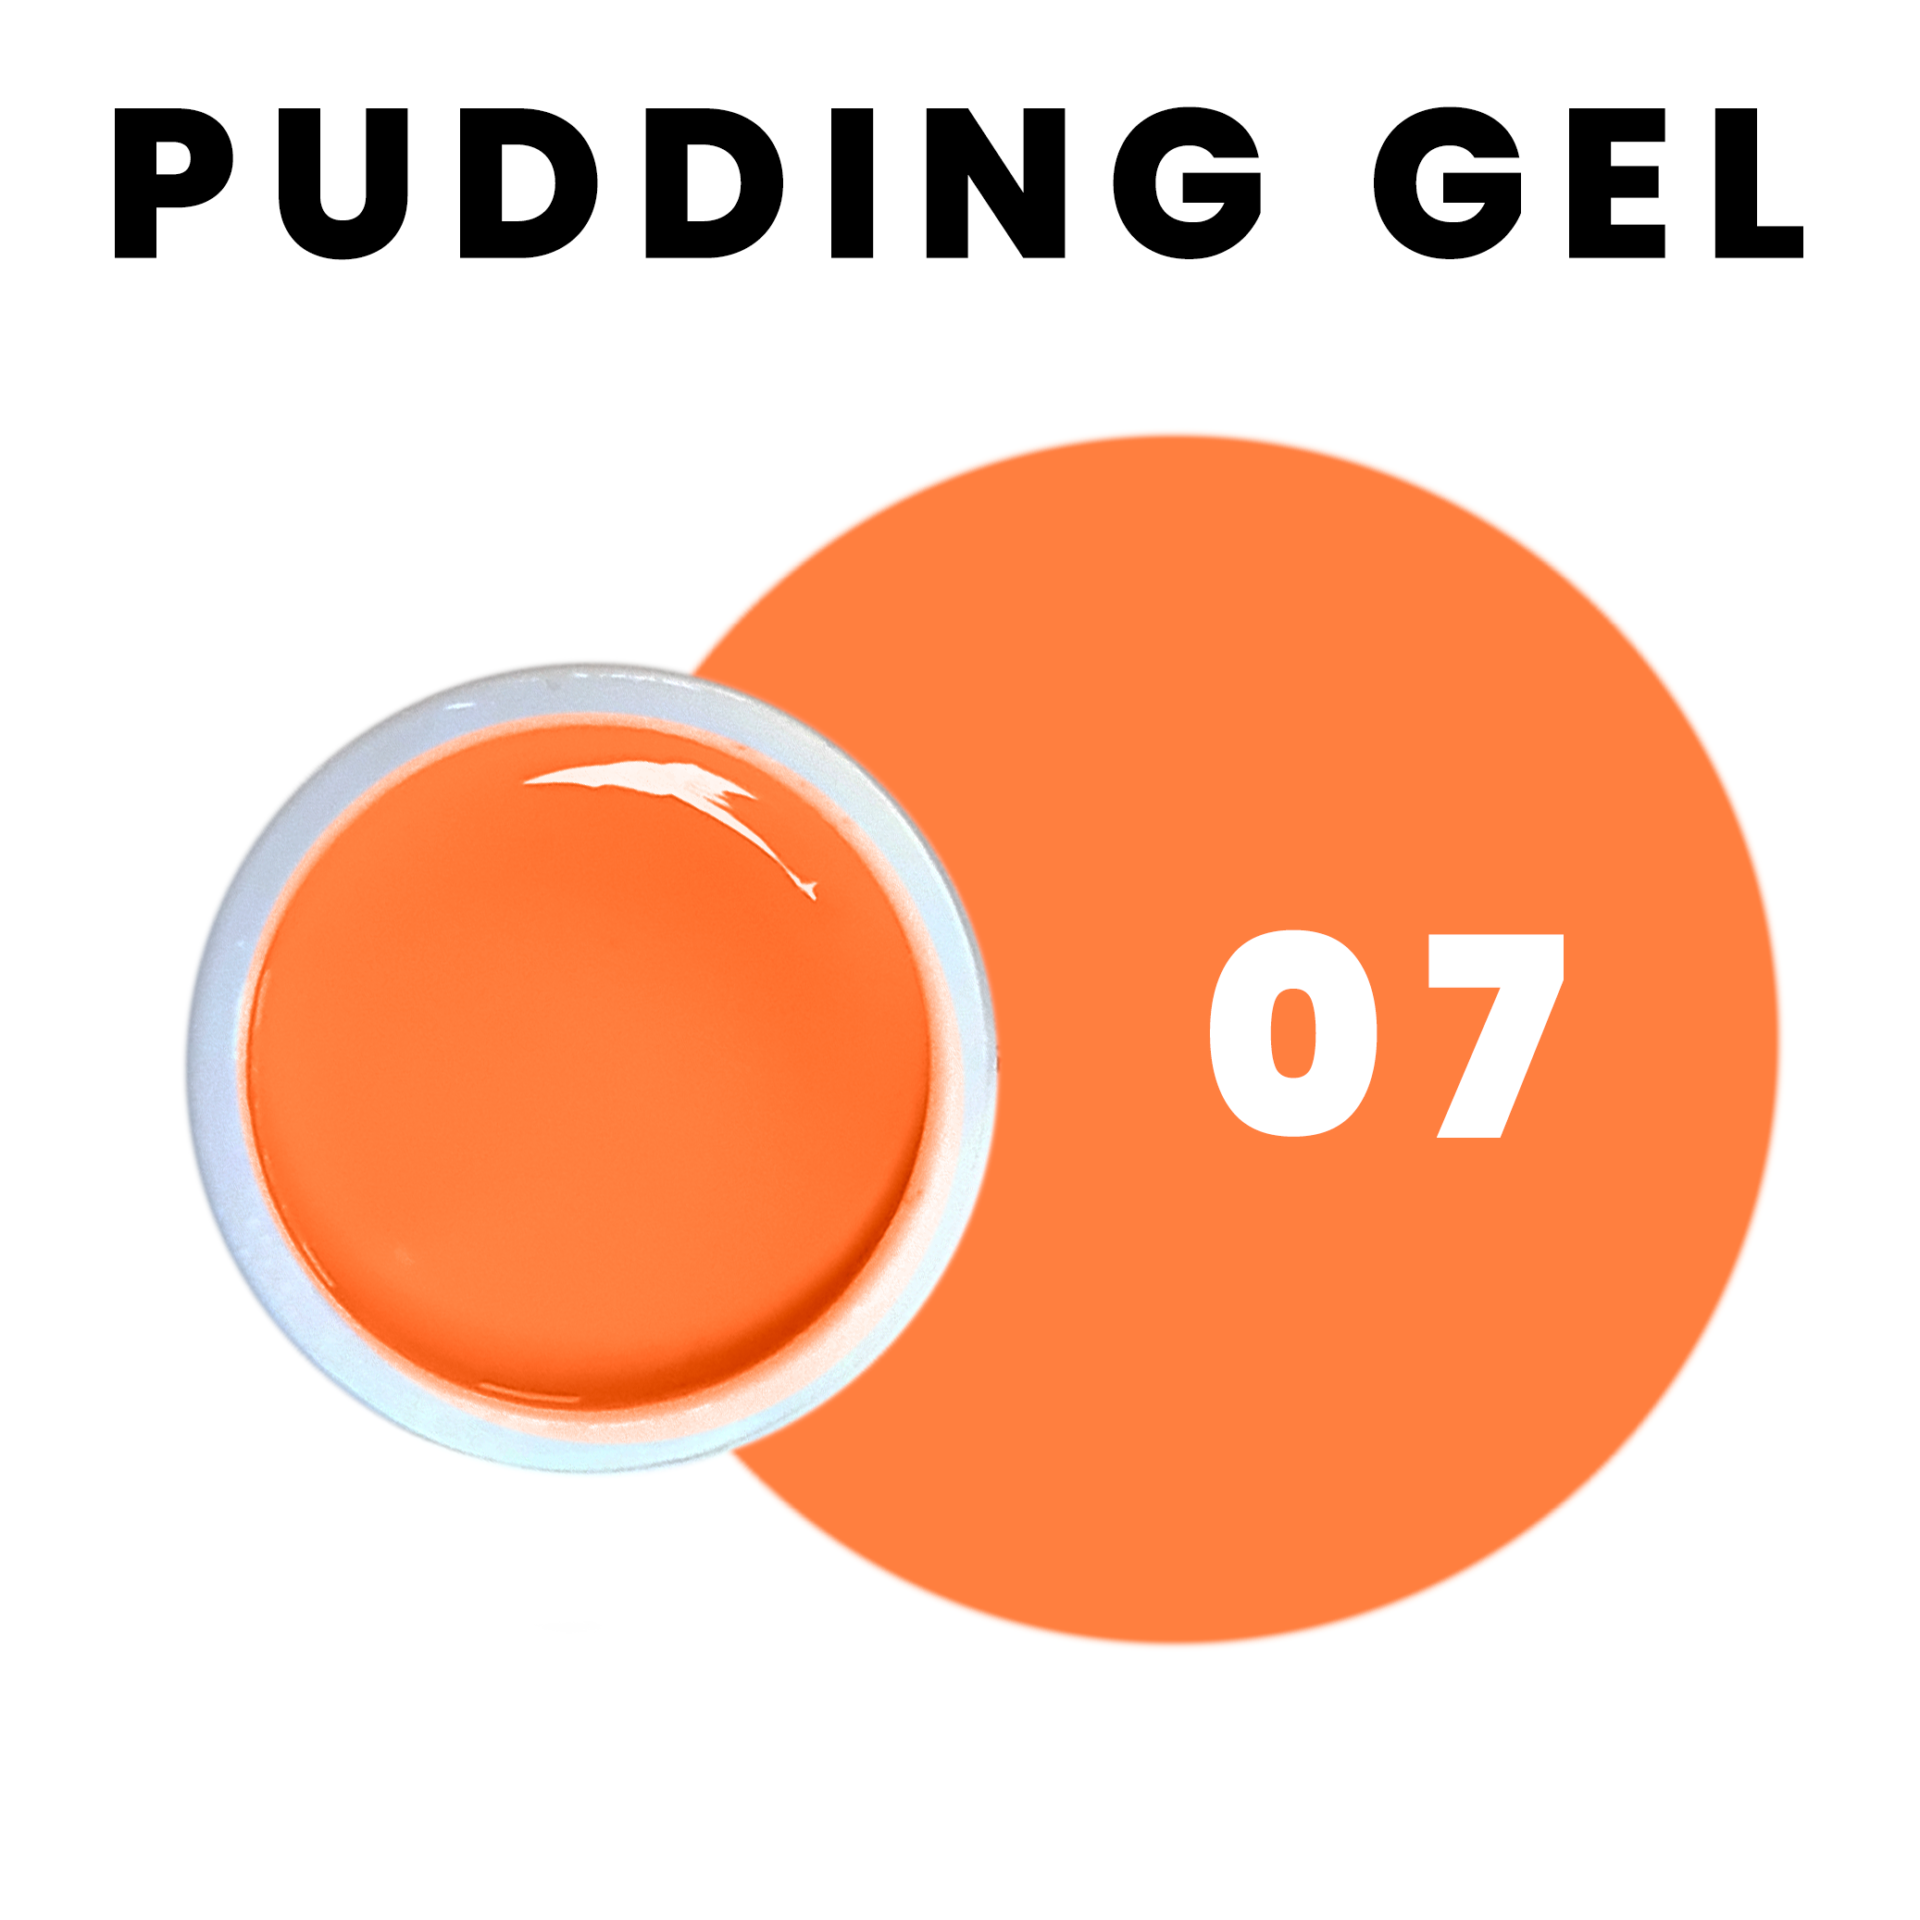 Pudding Gel 07 Orange 6g de Princess Paris